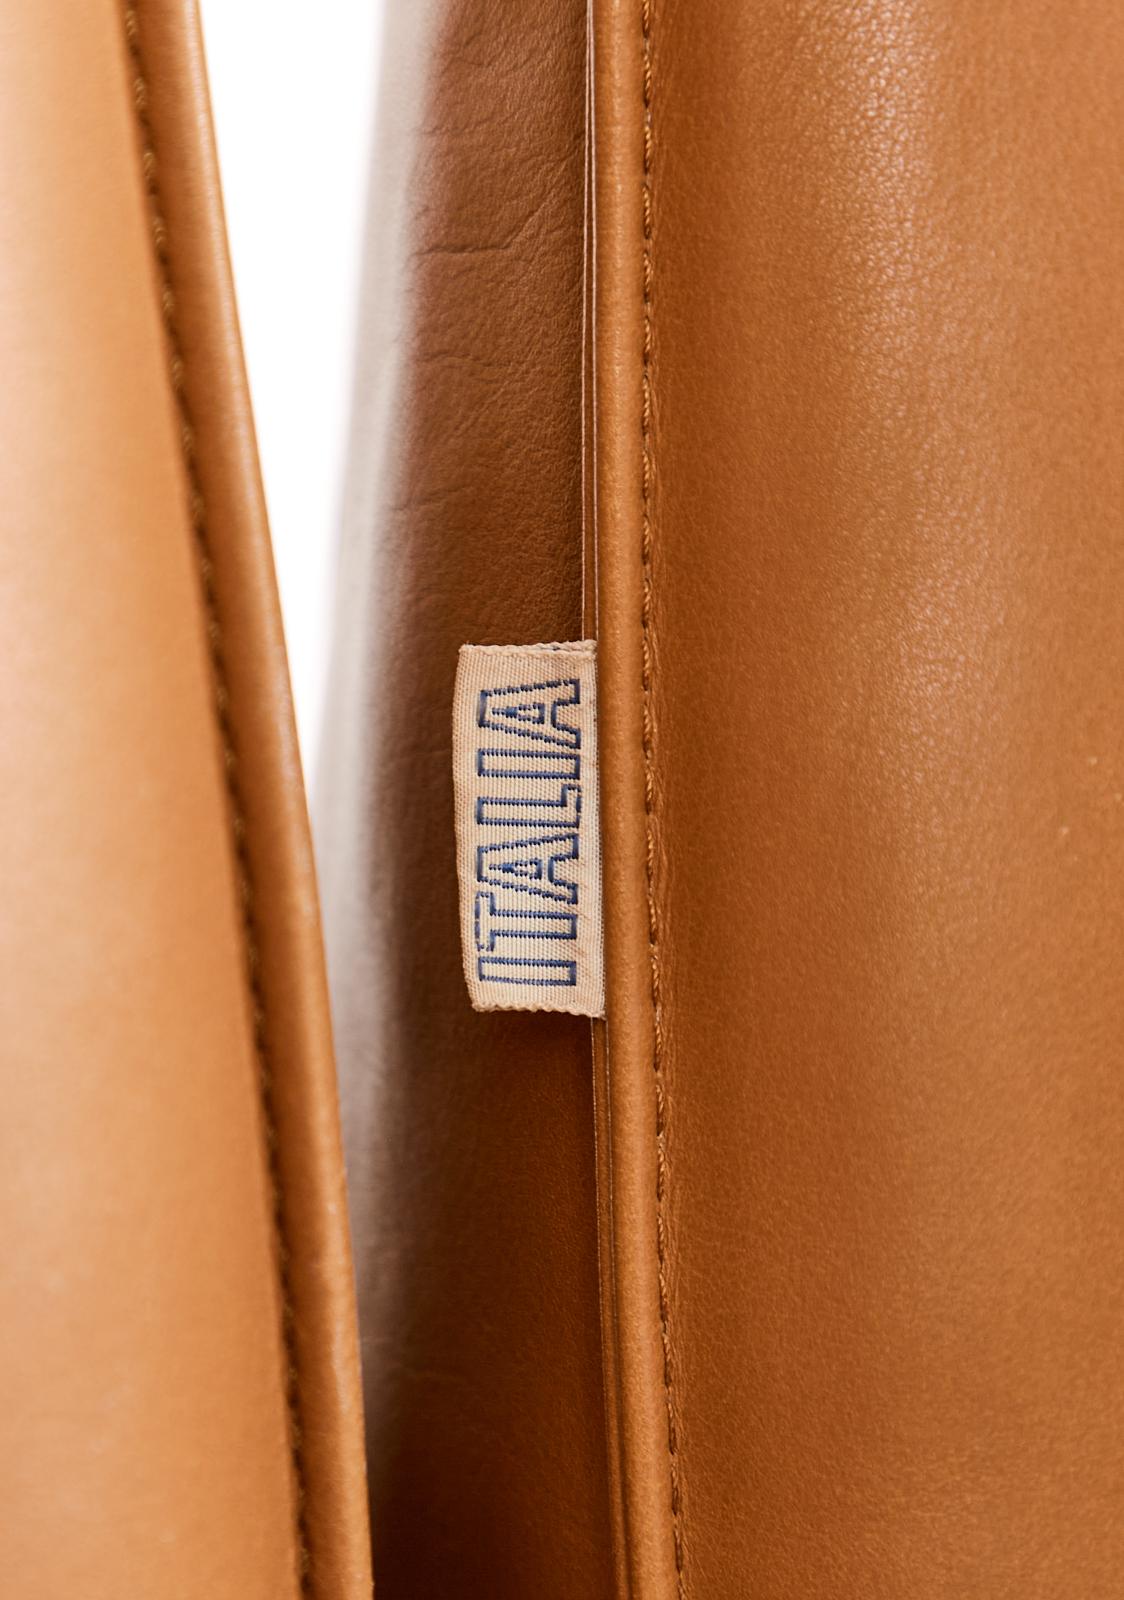 Bambole Leather Sectional Sofa by Mario Bellini for B + B Italia 10